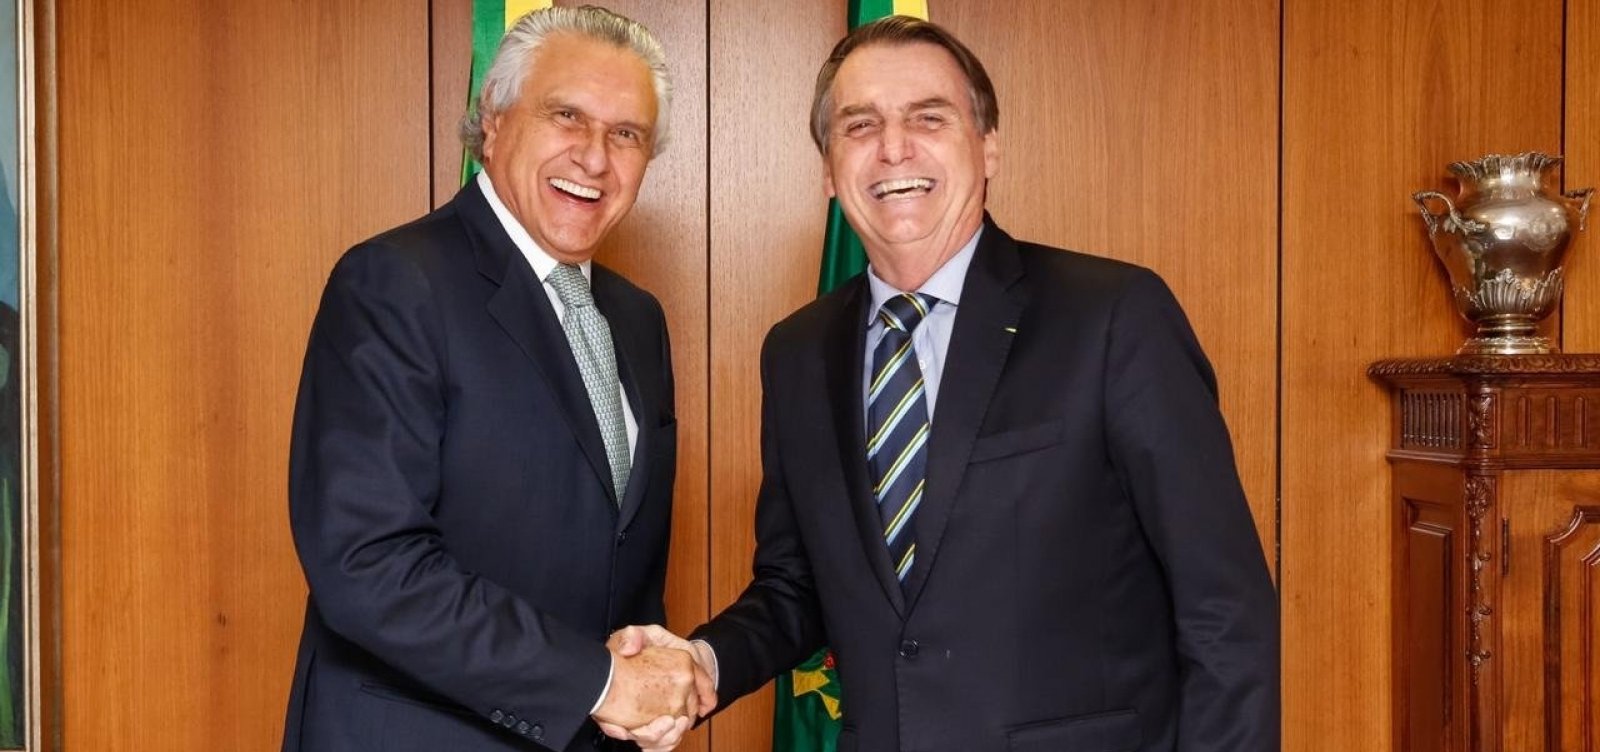 Ronaldo Caiado rompe aliança com Bolsonaro após pronunciamento do presidente